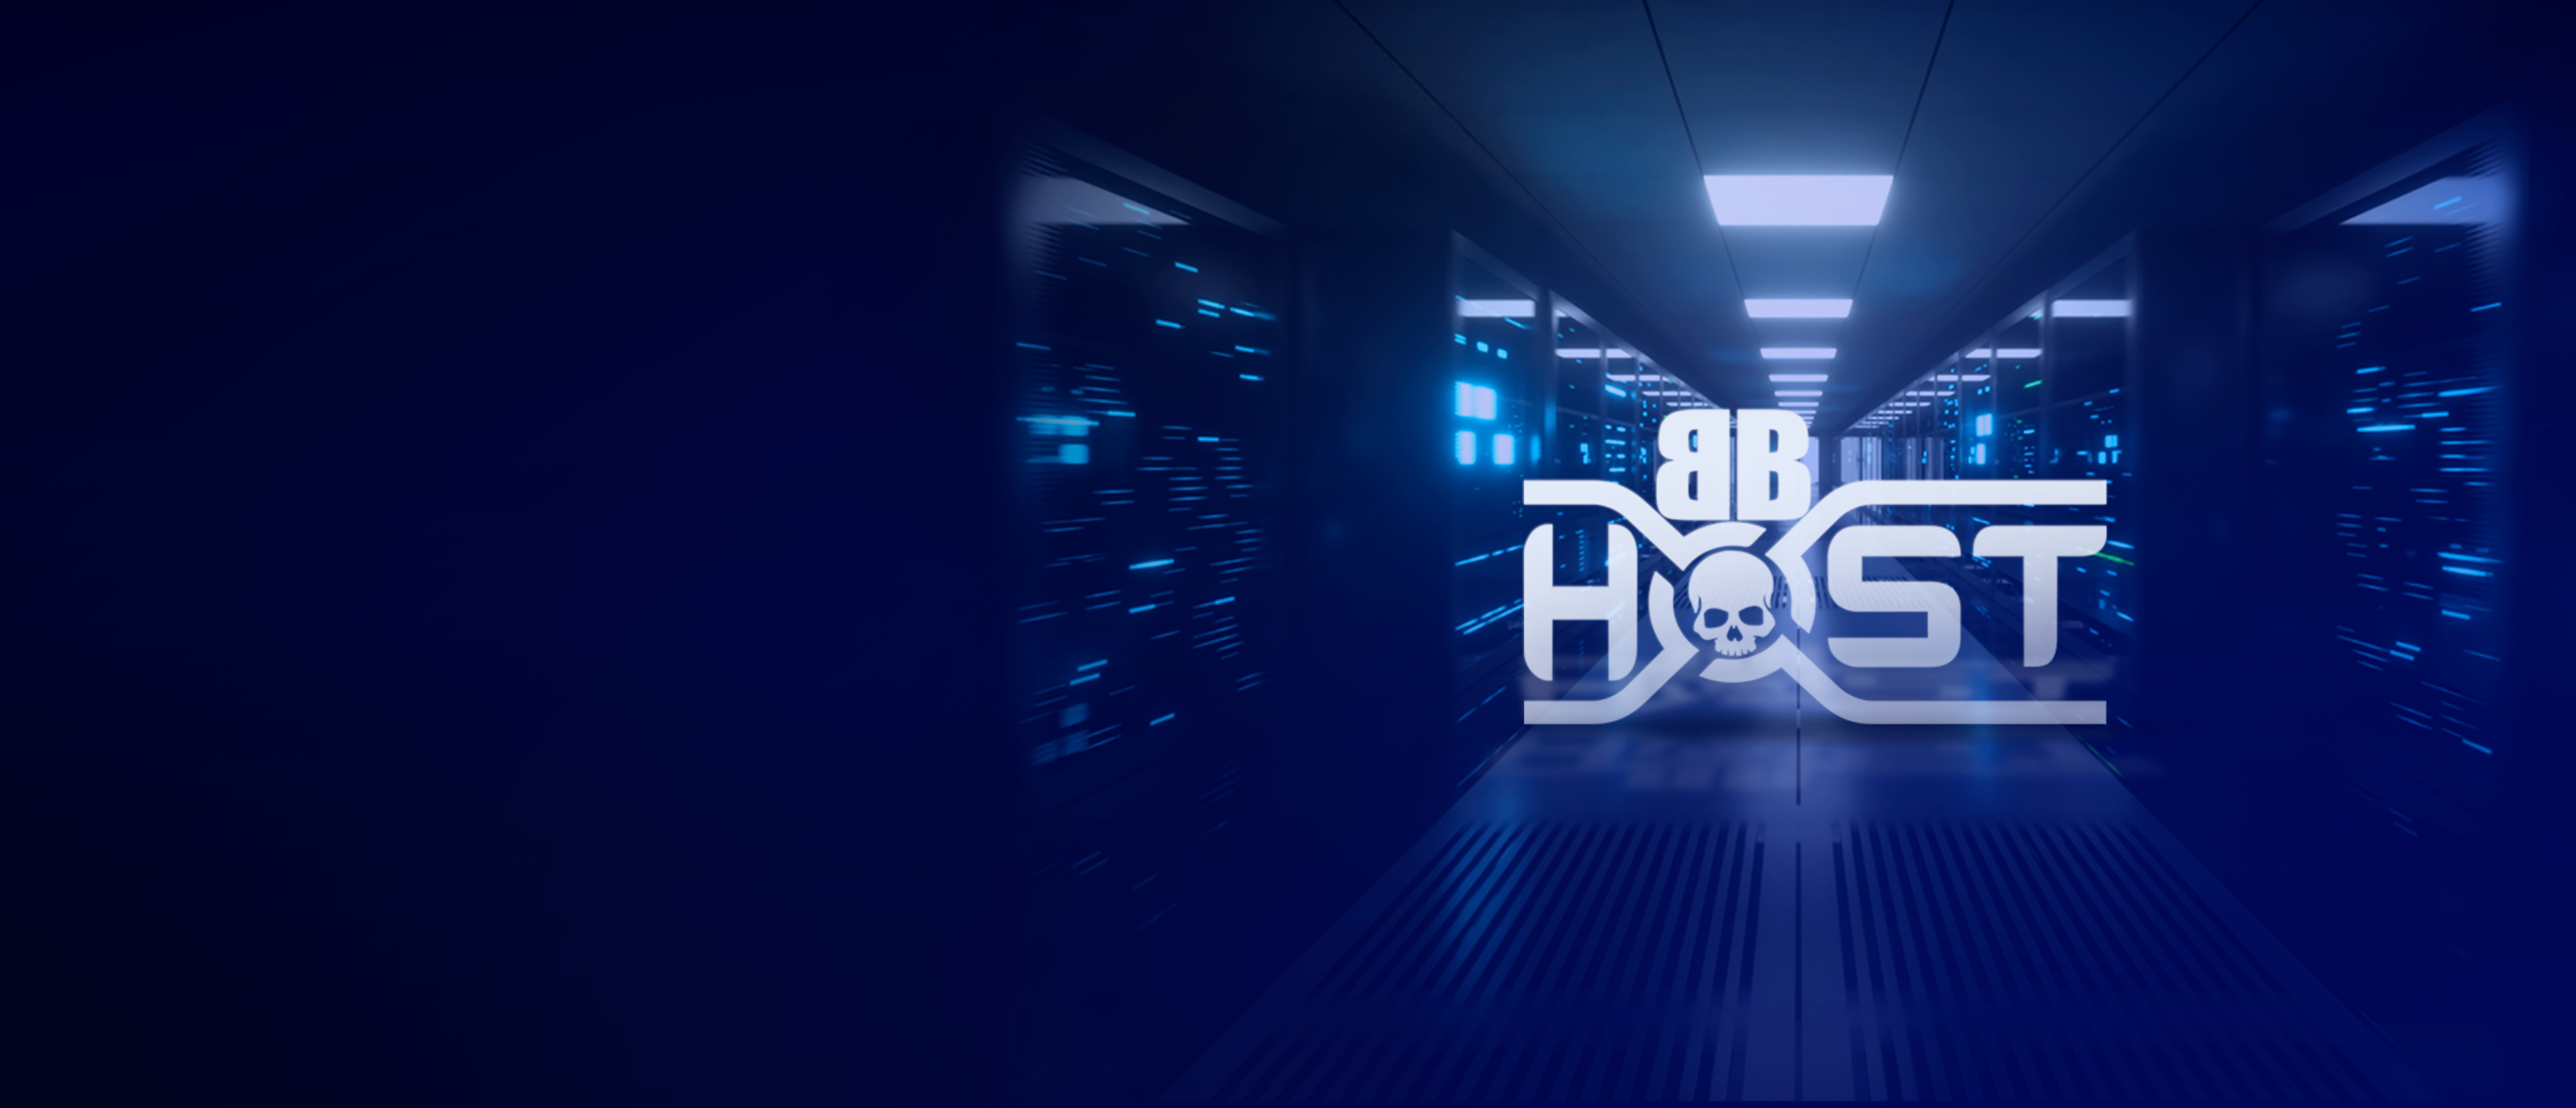 BB Host, datacenter de qualidade!